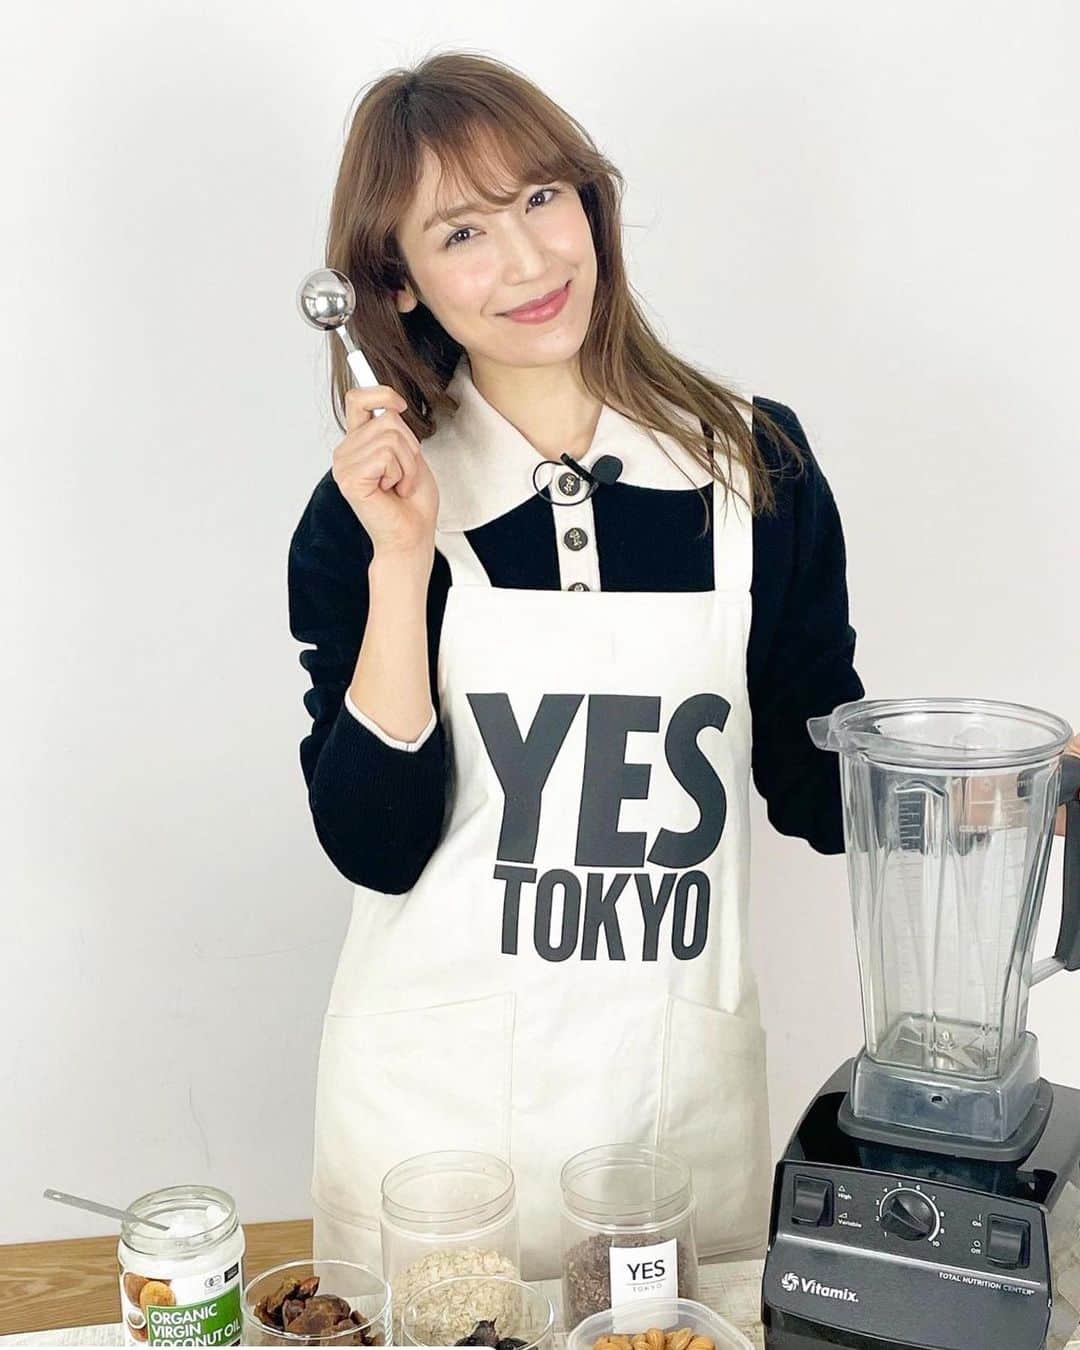 YES TOKYOのインスタグラム：「【YES TOKYO YouTube Channel】﻿ ﻿ ﻿ 皆様、こんばんは☺︎﻿ ﻿ いつも、YES TOKYOをご利用いただき誠にありがとうございます！﻿ ﻿ ﻿ ご自宅で過ごされる時間を利用してジュースクレンズに挑戦される方が多く、﻿日々沢山のご注文とお問い合わせをいただいております。﻿ ﻿ おうち時間が多くなることにより、ご自身の身体と向き合う良いきっかけになっているのではないでしょうか？﻿ ﻿ ﻿ そんな中、YES TOKYOではYouTube Channelにて﻿ ﻿ ・正しいジュースクレンズの実践方法について﻿ ・準備食や、回復食の過ごし方﻿ ・ご自宅で作れるスムージーやスイーツのレシピ﻿ ﻿ など、お客様のリクエストに応じて配信しておりますので是非ご参考にされてみてください。﻿ ﻿ ﻿ YouTubeで検索の場合→ YES TOKYO﻿ ﻿ 是非、YES TOKYOのチャンネルにもご登録ください☺︎﻿ ﻿ ﻿ 【お問い合わせ】﻿ ■中目黒店﻿ ☎︎：03-3760-4717﻿ ﻿ ■二子玉川店﻿ ☎︎：03-6447-9663﻿ ﻿ ﻿ ﻿ @yestokyo﻿ #yestokyo #yoga #cbdoil #coldpressedjuice #fasting #vegan #stojo﻿ #ヨガ #コールドプレスジュース #ジュースクレンズ #クレンズジュース #中目黒 #免疫力アップ #コロナ対策 #デリバリー #二子玉川 #代官山 #世田谷 #ダイエット #ファスティング #ダイエットメニュー #cbdオイル #ダイエットプログラム #腸活 #腸活ダイエット #断食 #断食ダイエット #ストージョ #エコ #エコ活」